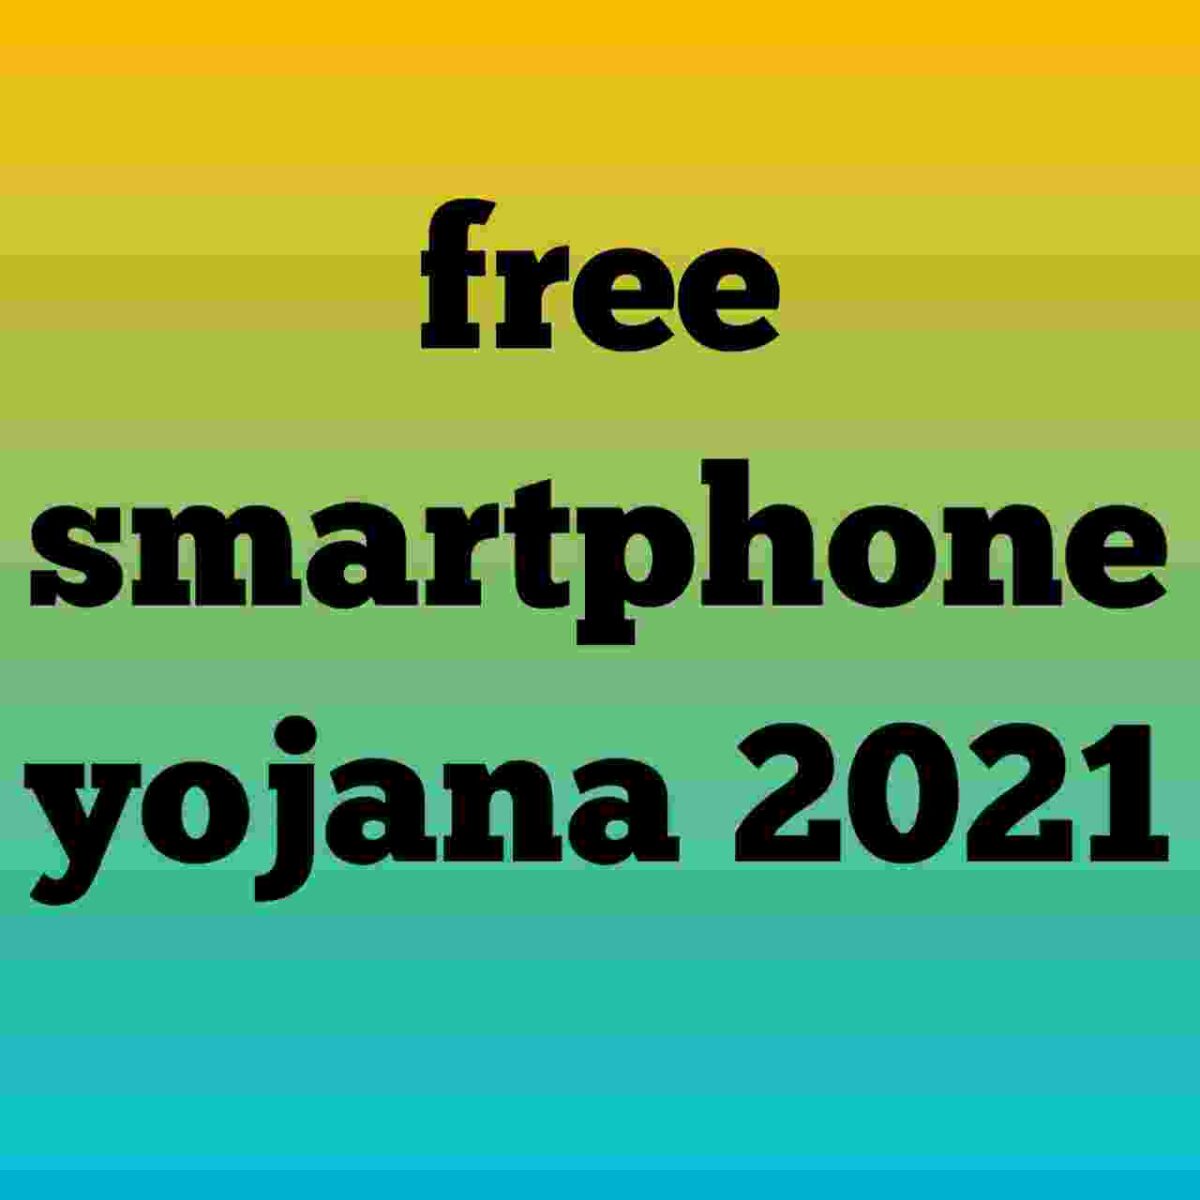 Up free smartphone yojana 2021